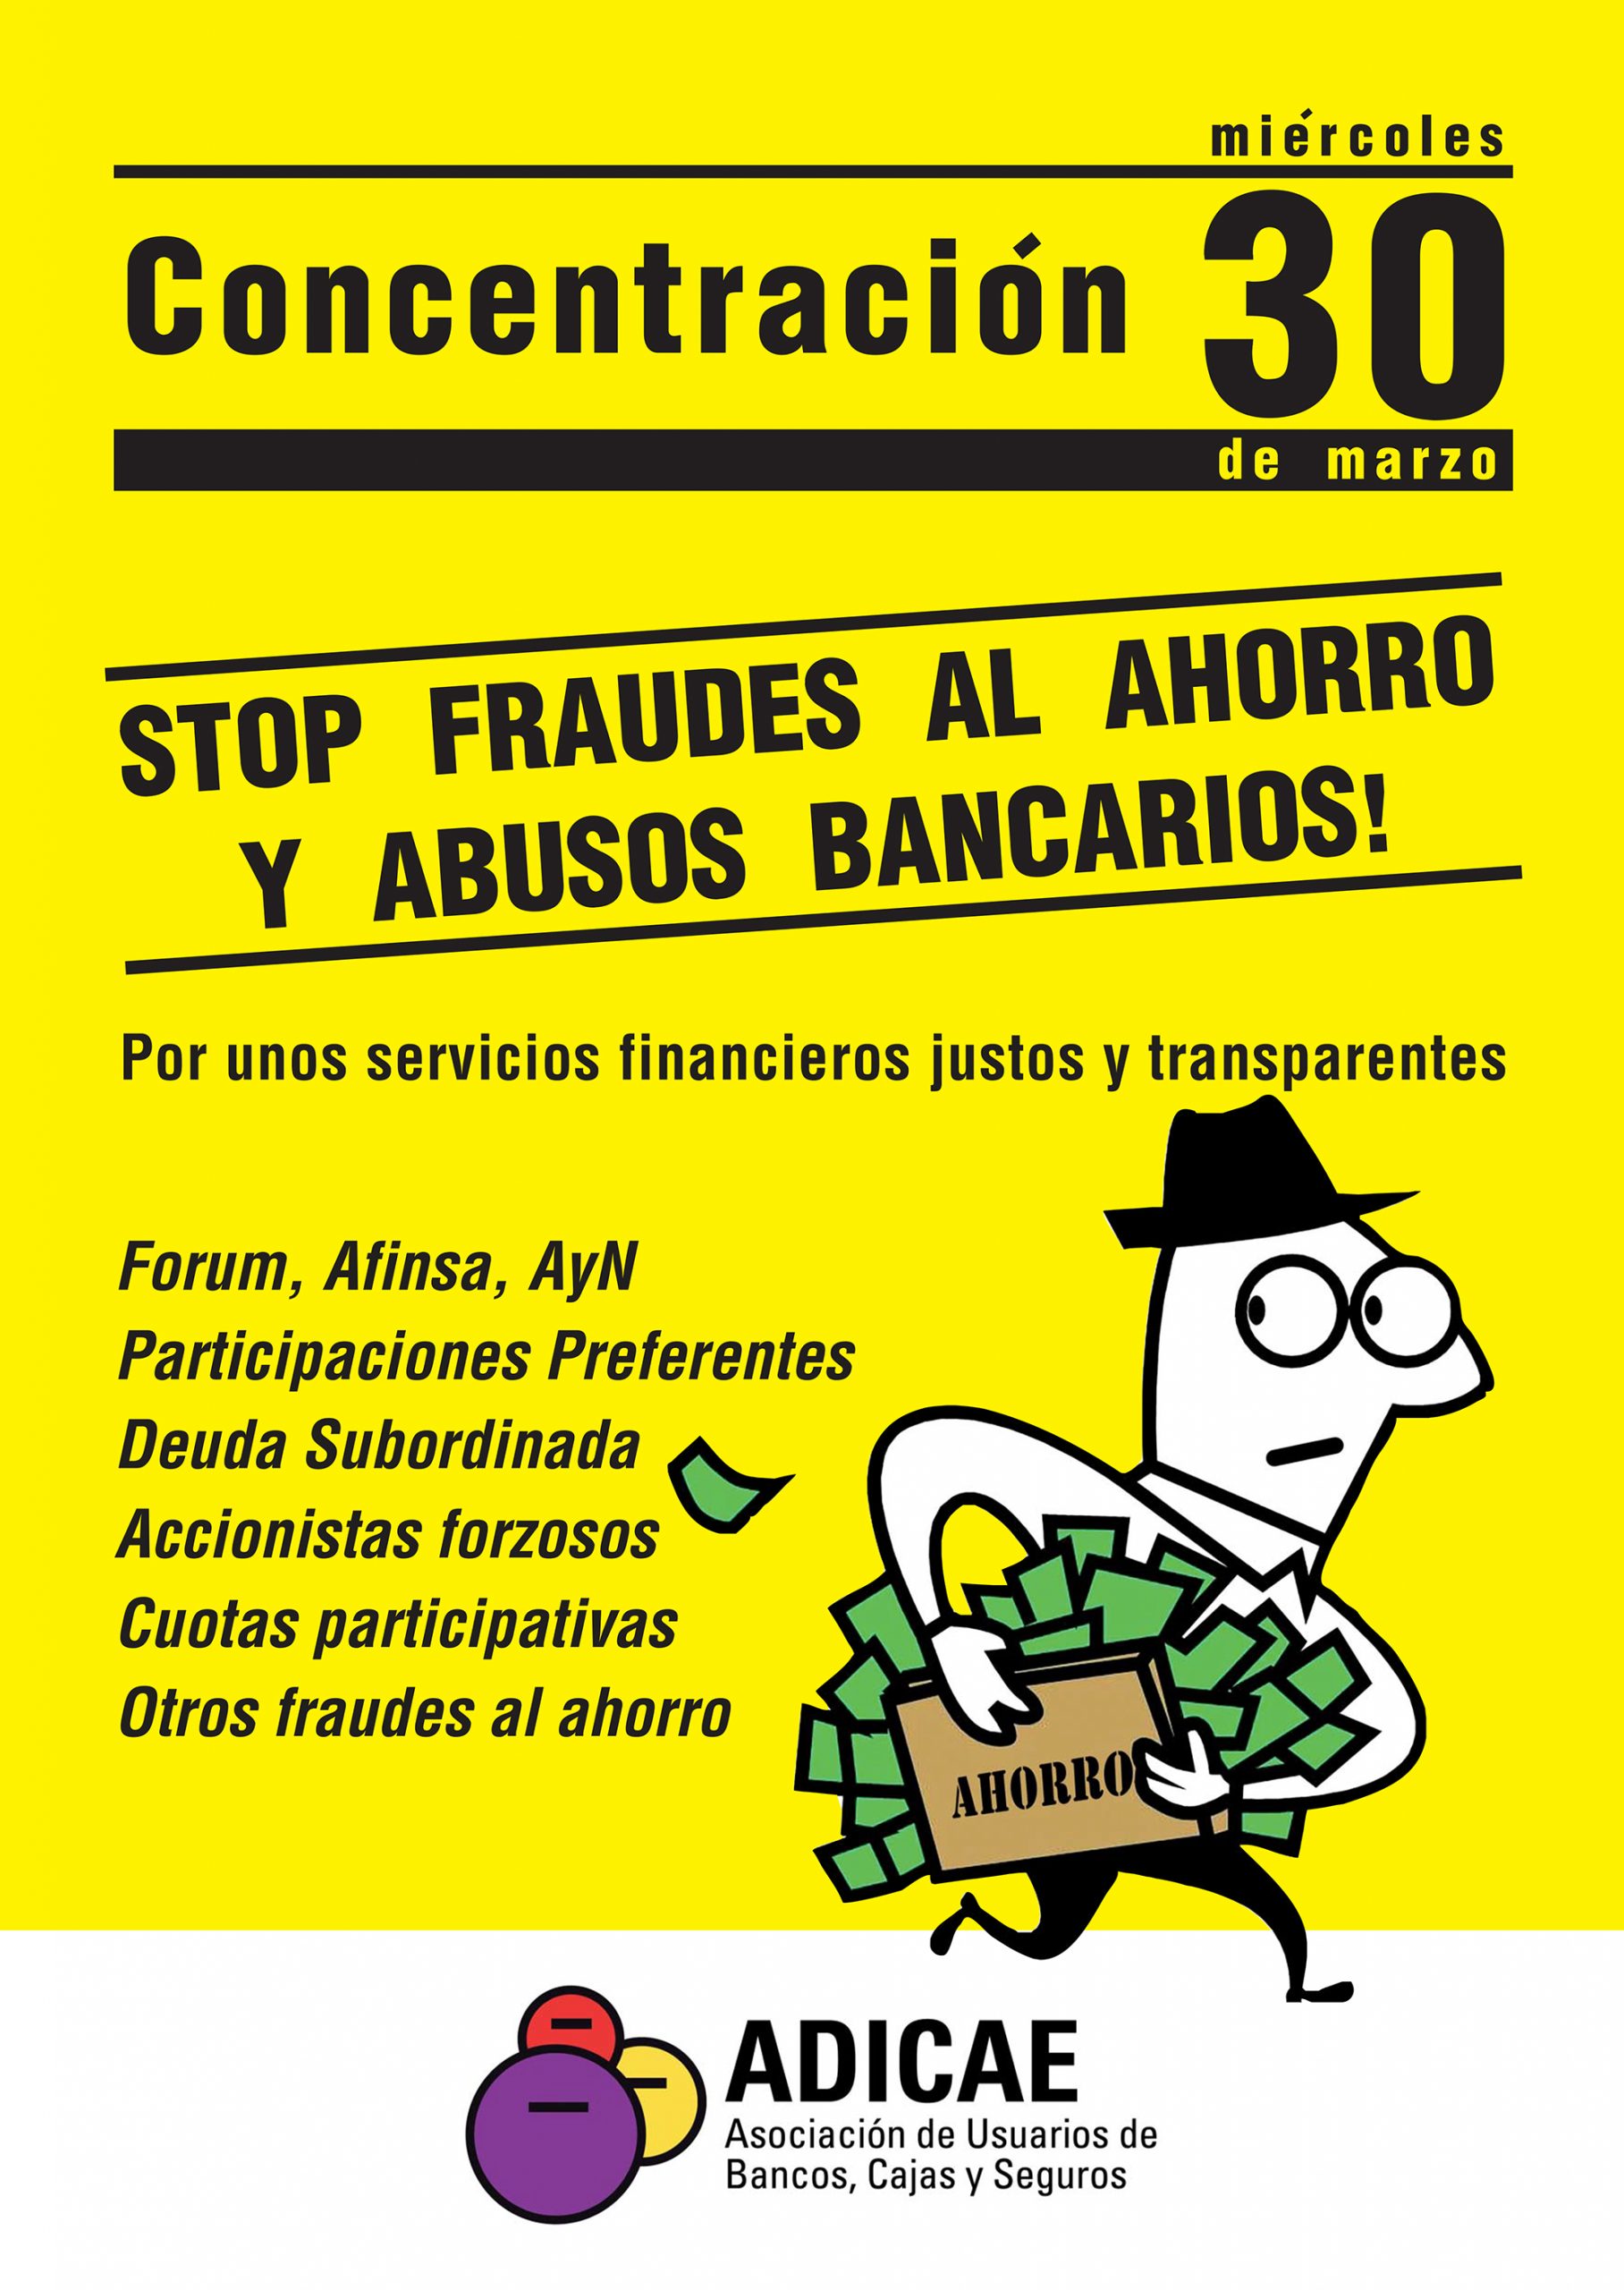 ADICAE convoca movilizaciones este miércoles en 17 ciudades contra los fraudes al ahorro y por un sistema financiero justo